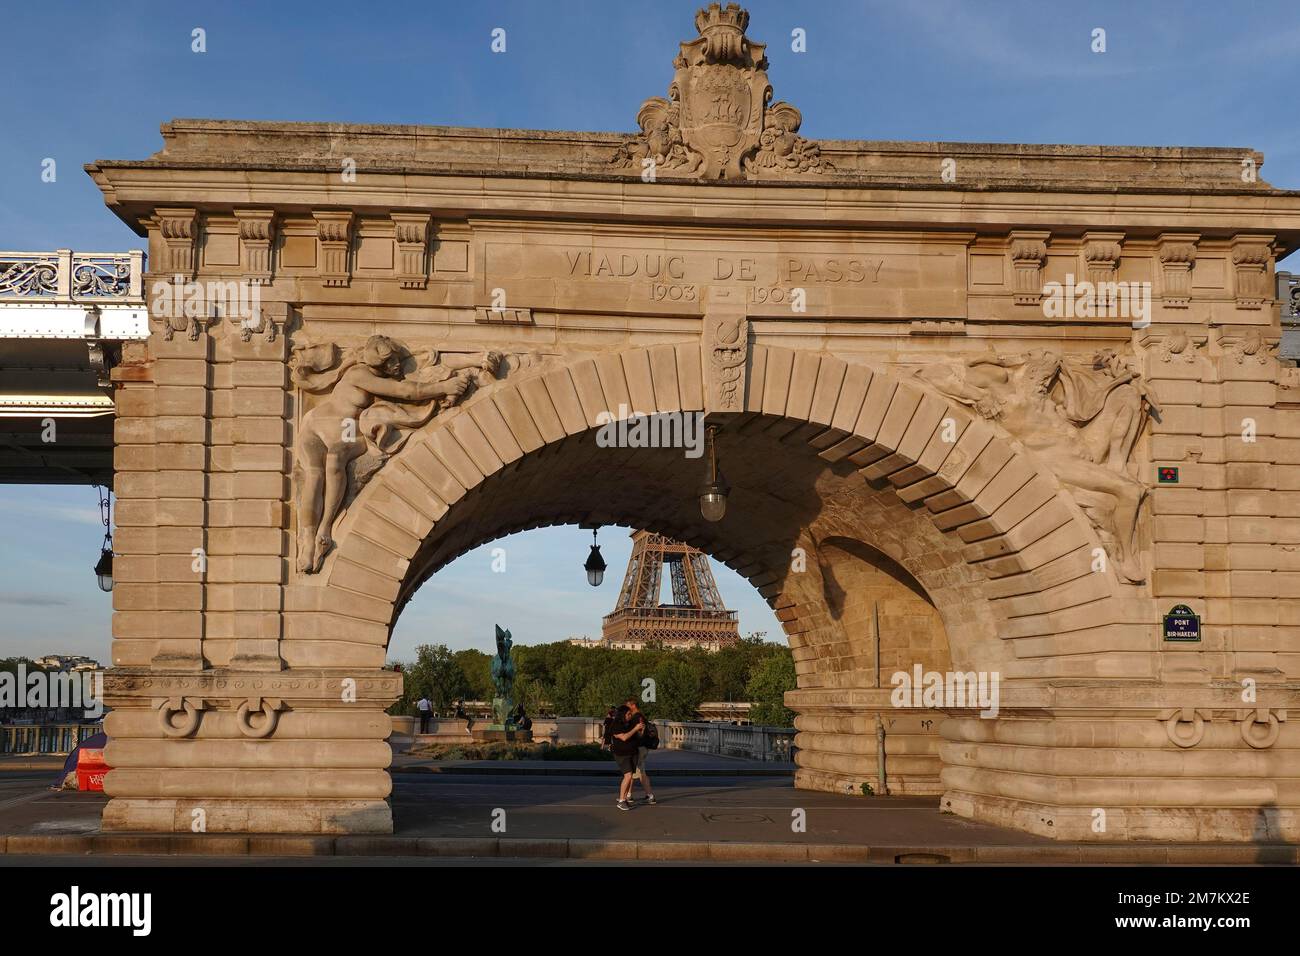 Francia, París, el viaducto Passy en el puente Bir-Hakeim. Foto © Fabio Mazzarella/Sintesi/Alamy Foto de archivo Foto de stock